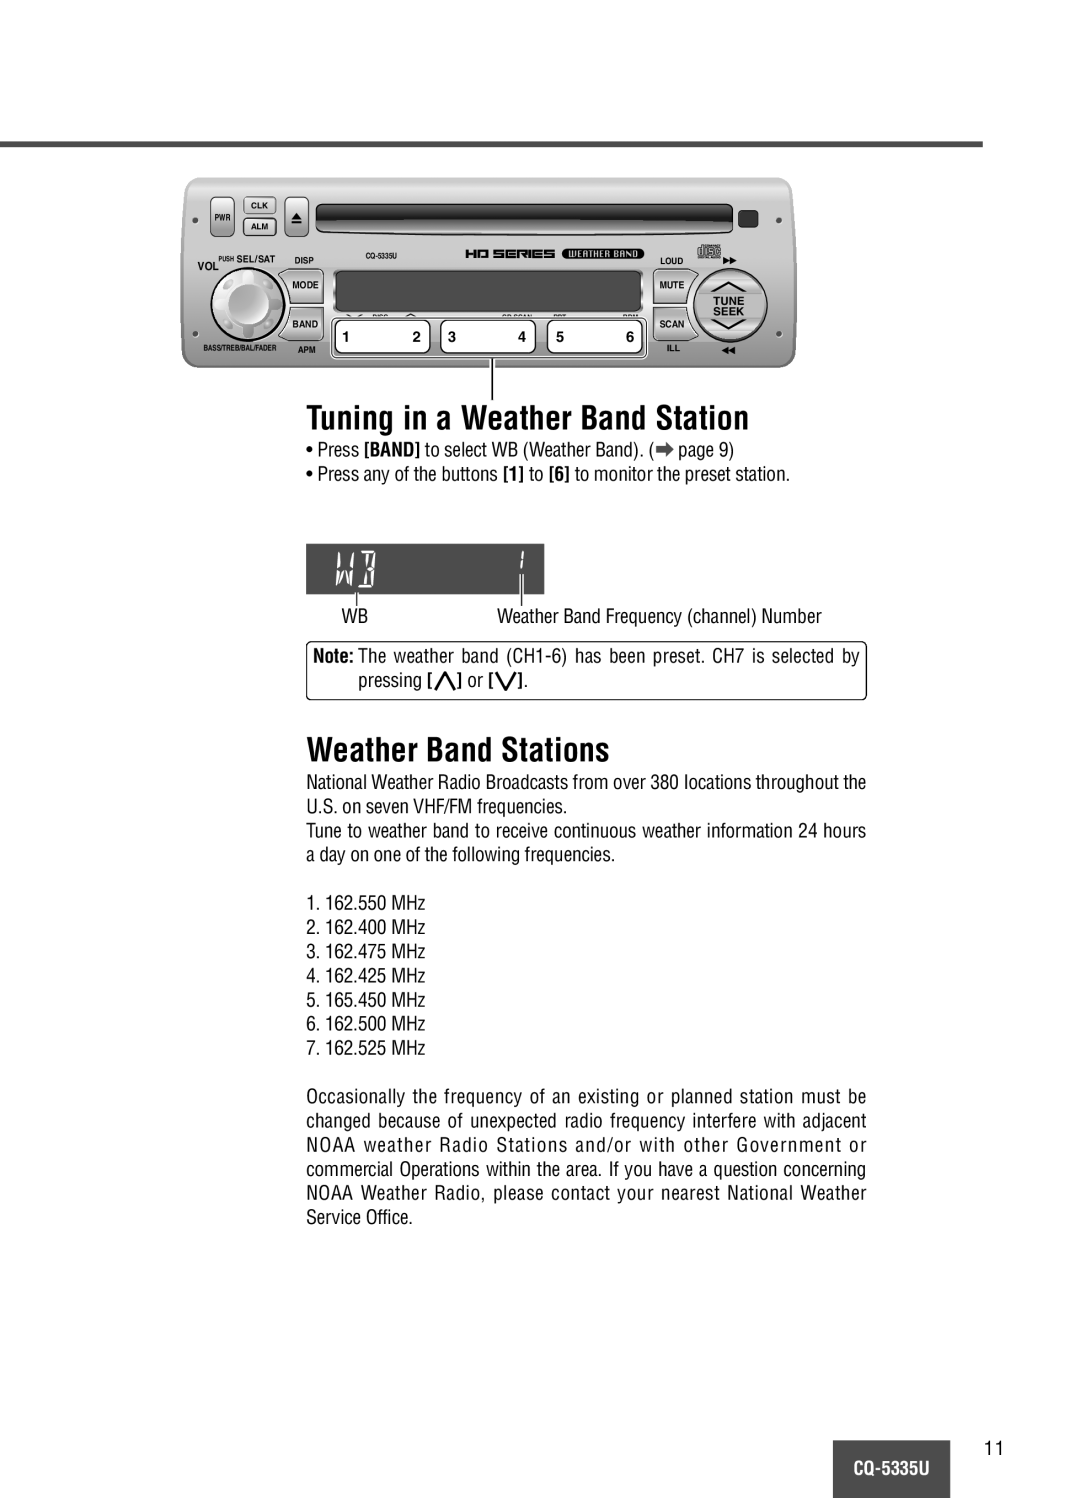 Panasonic CQ-5335U operating instructions Tuning in a Weather Band Station, Weather Band Stations 